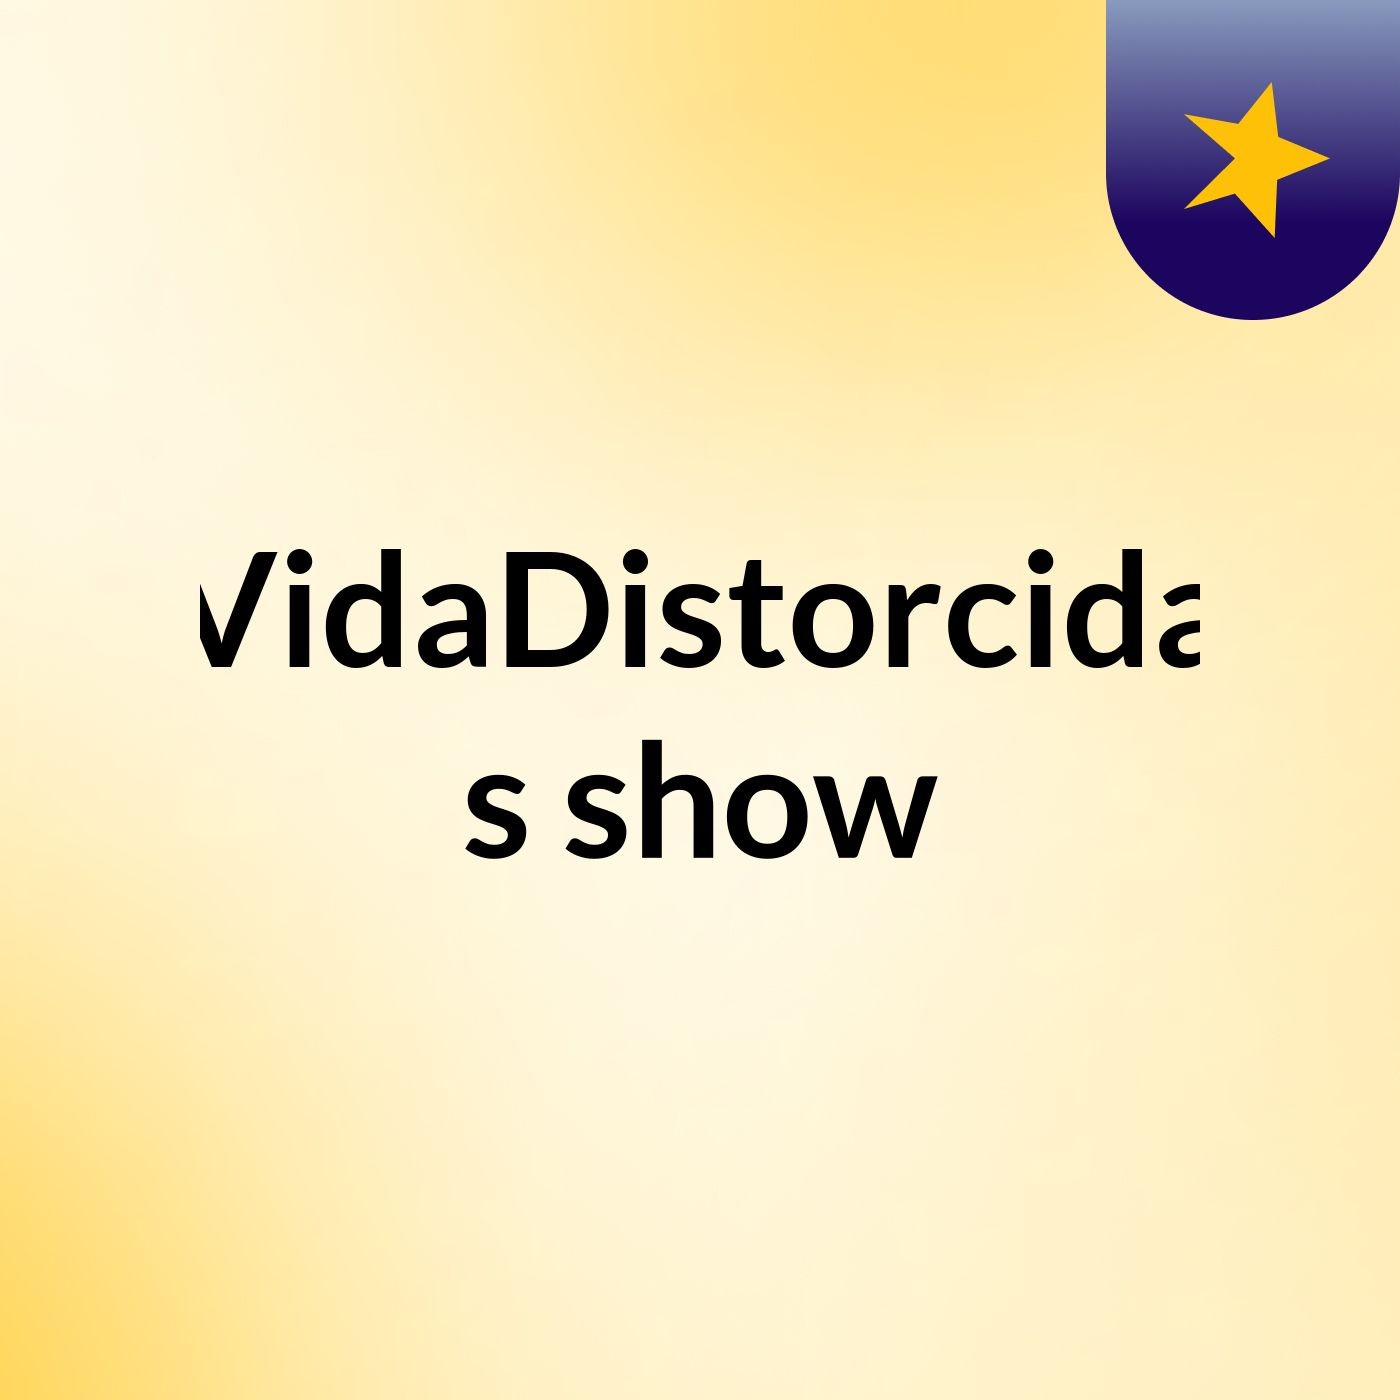 VidaDistorcida's show